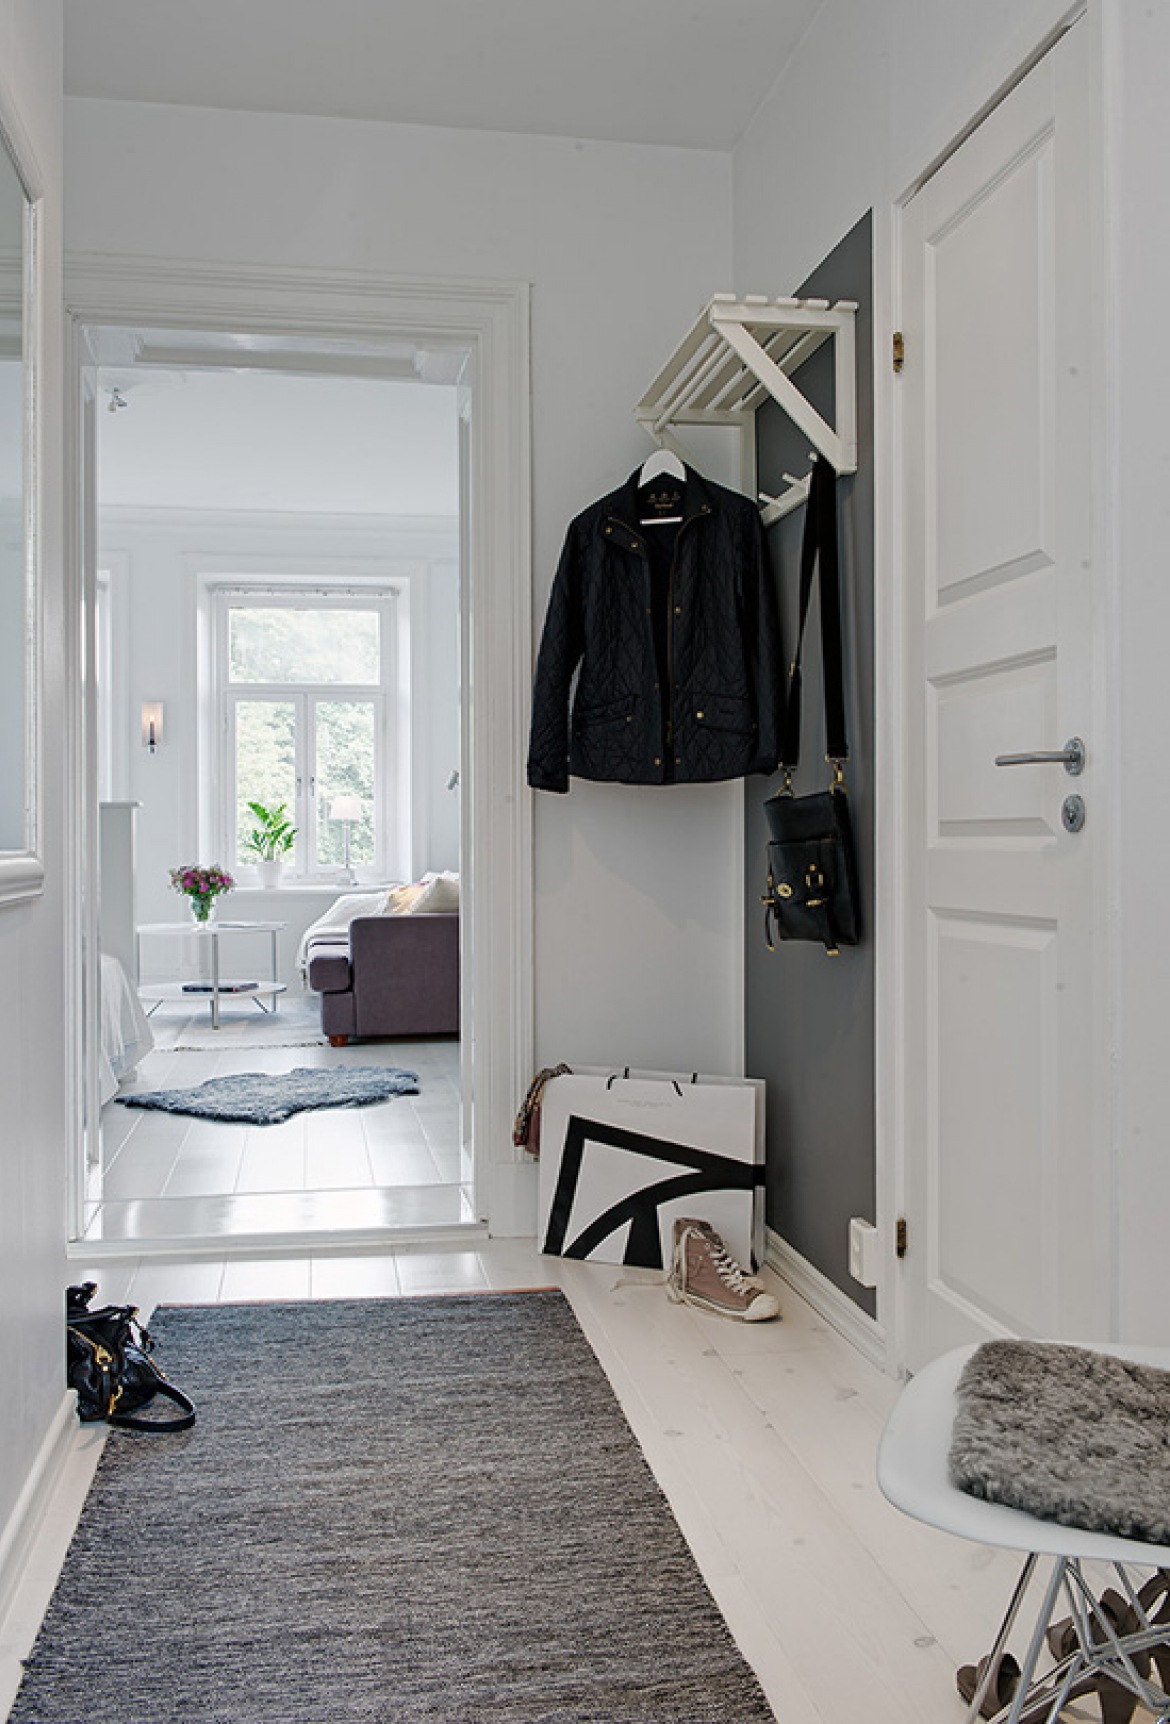 Pomysł na biało-szary wąski korytarz w mieszkaniu (20057)